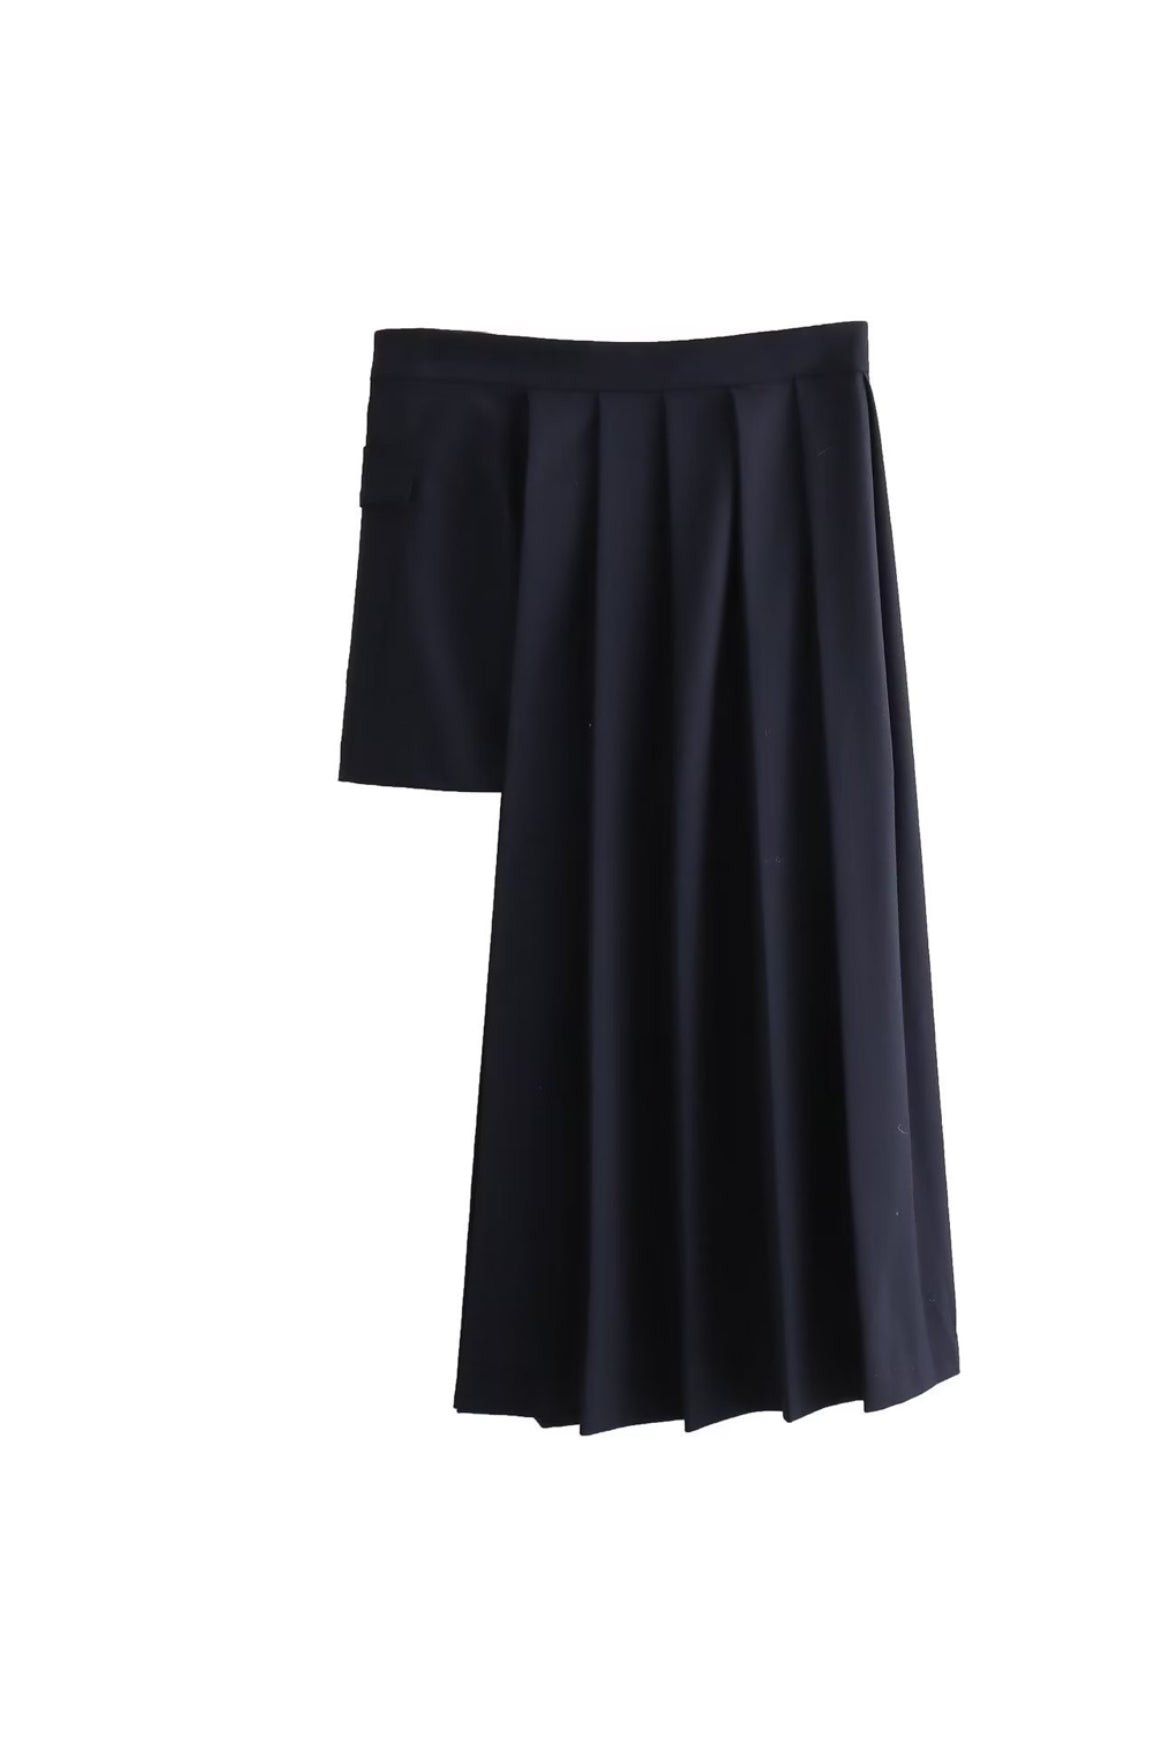 Meryl kilt skirt (preorder)